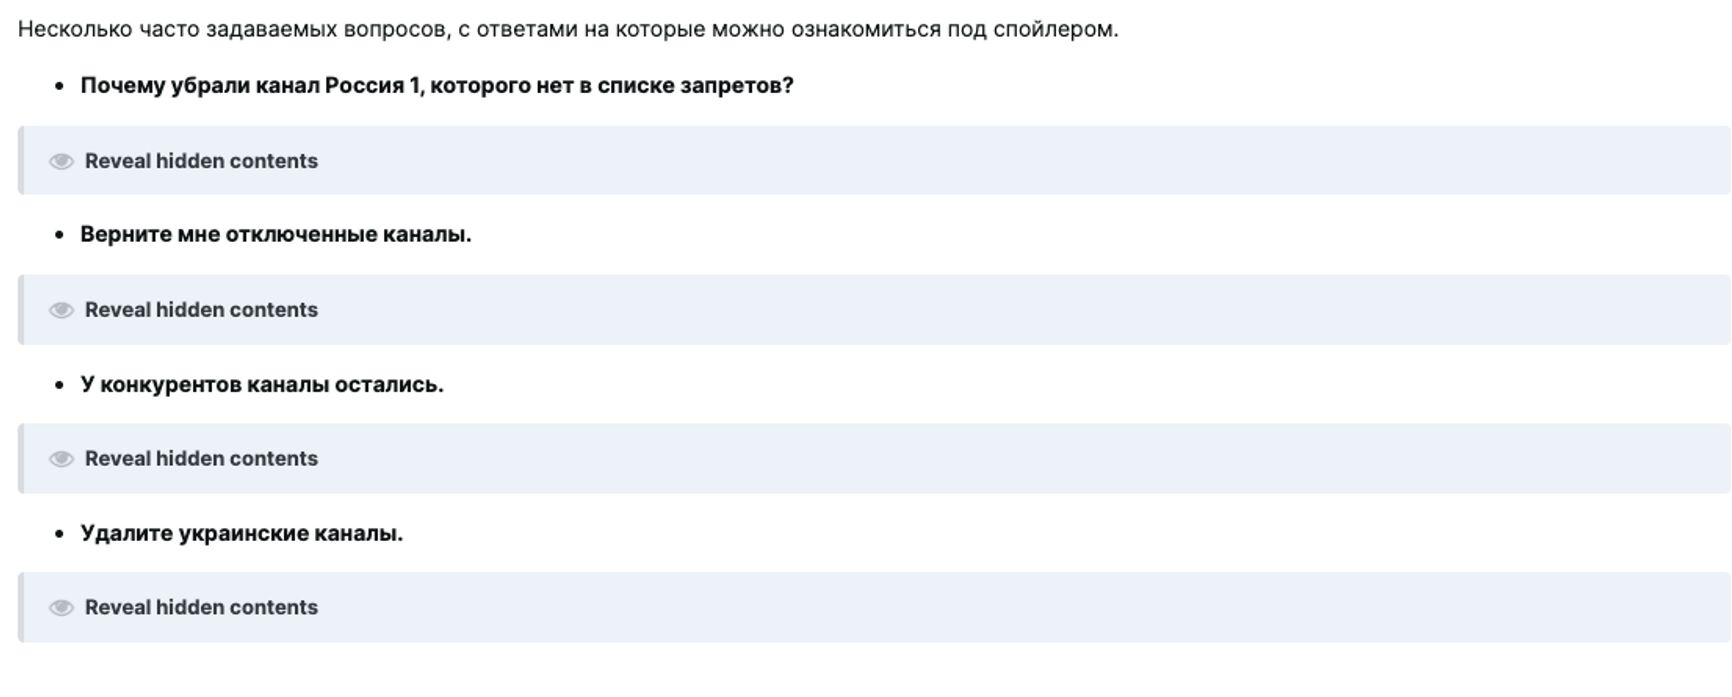 Раздел «Часто задаваемые вопросы» на форуме «Kartina TV».